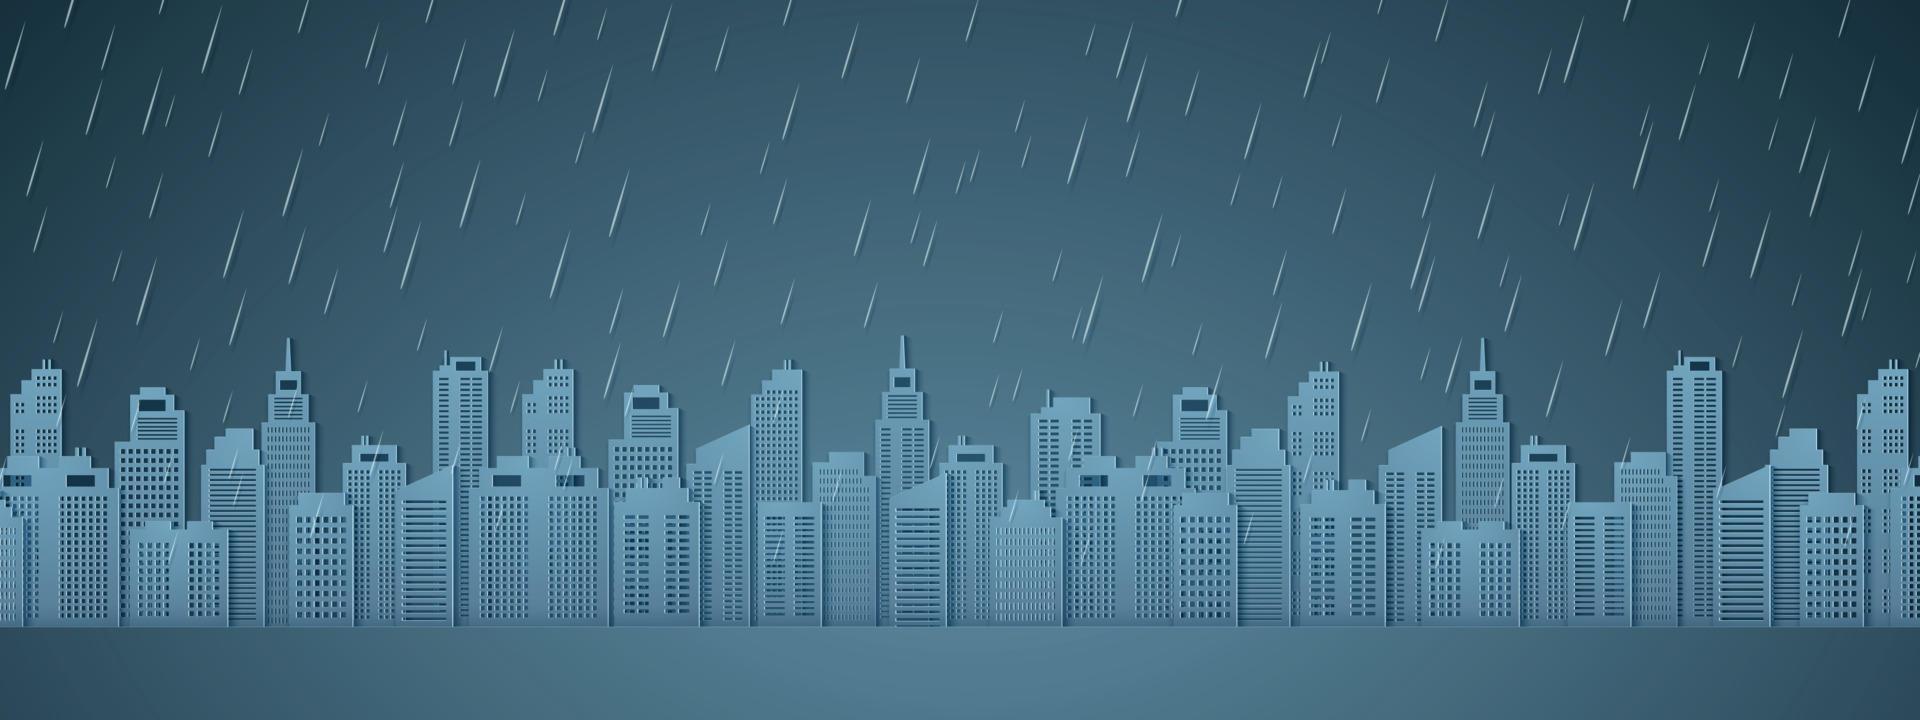 stadsbild med regn, mörk himmel, regnperiod, papper konststil vektor